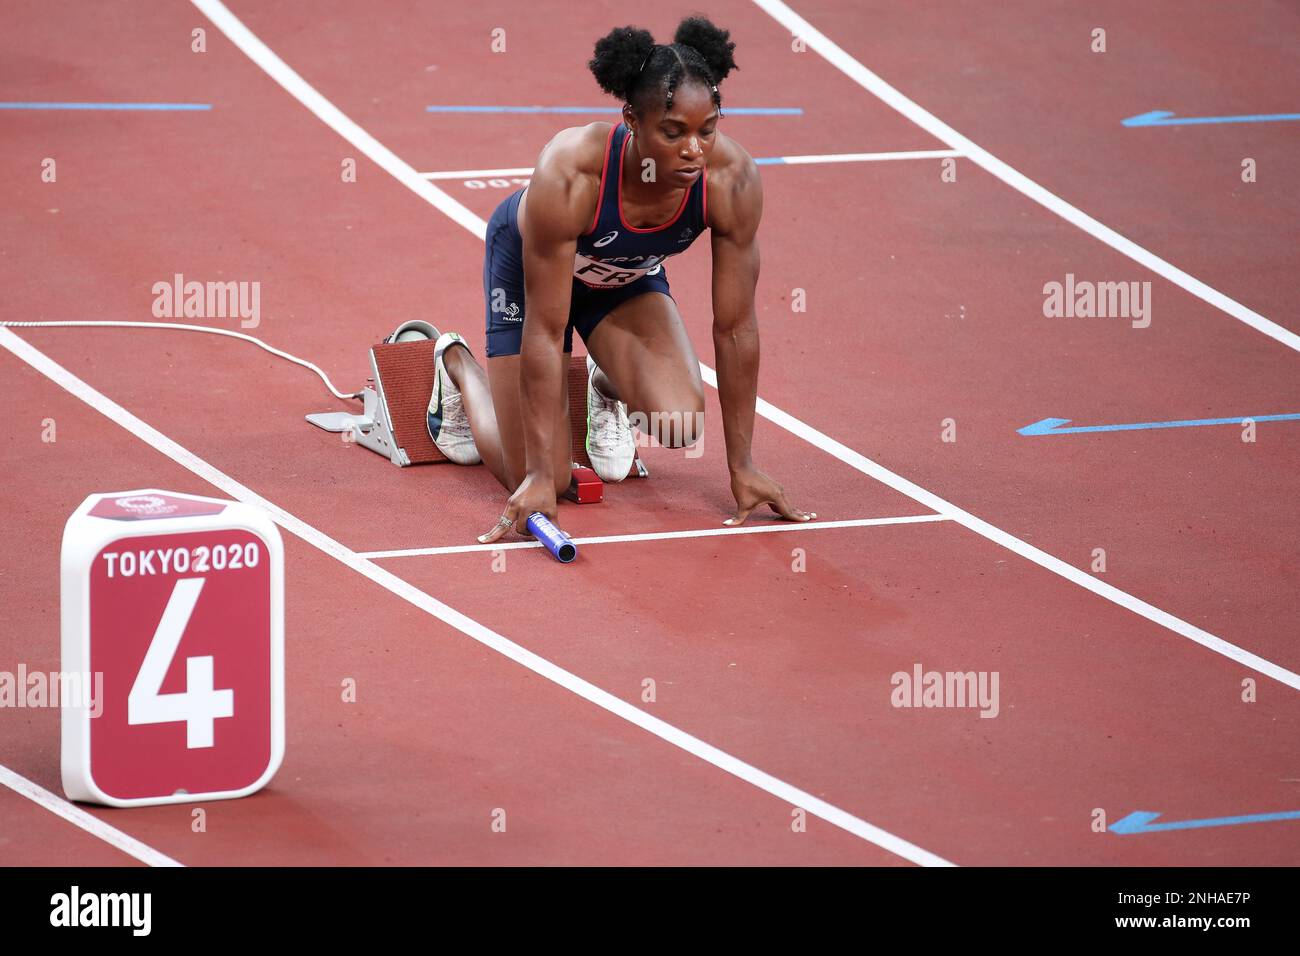 06 AOÛT 2021 - Tokyo, Japon: Carolle Zahi de France dans la finale du relais 4 x 100m des femmes athlétiques aux Jeux Olympiques de Tokyo 2020 (photo: Mickael Chov Banque D'Images